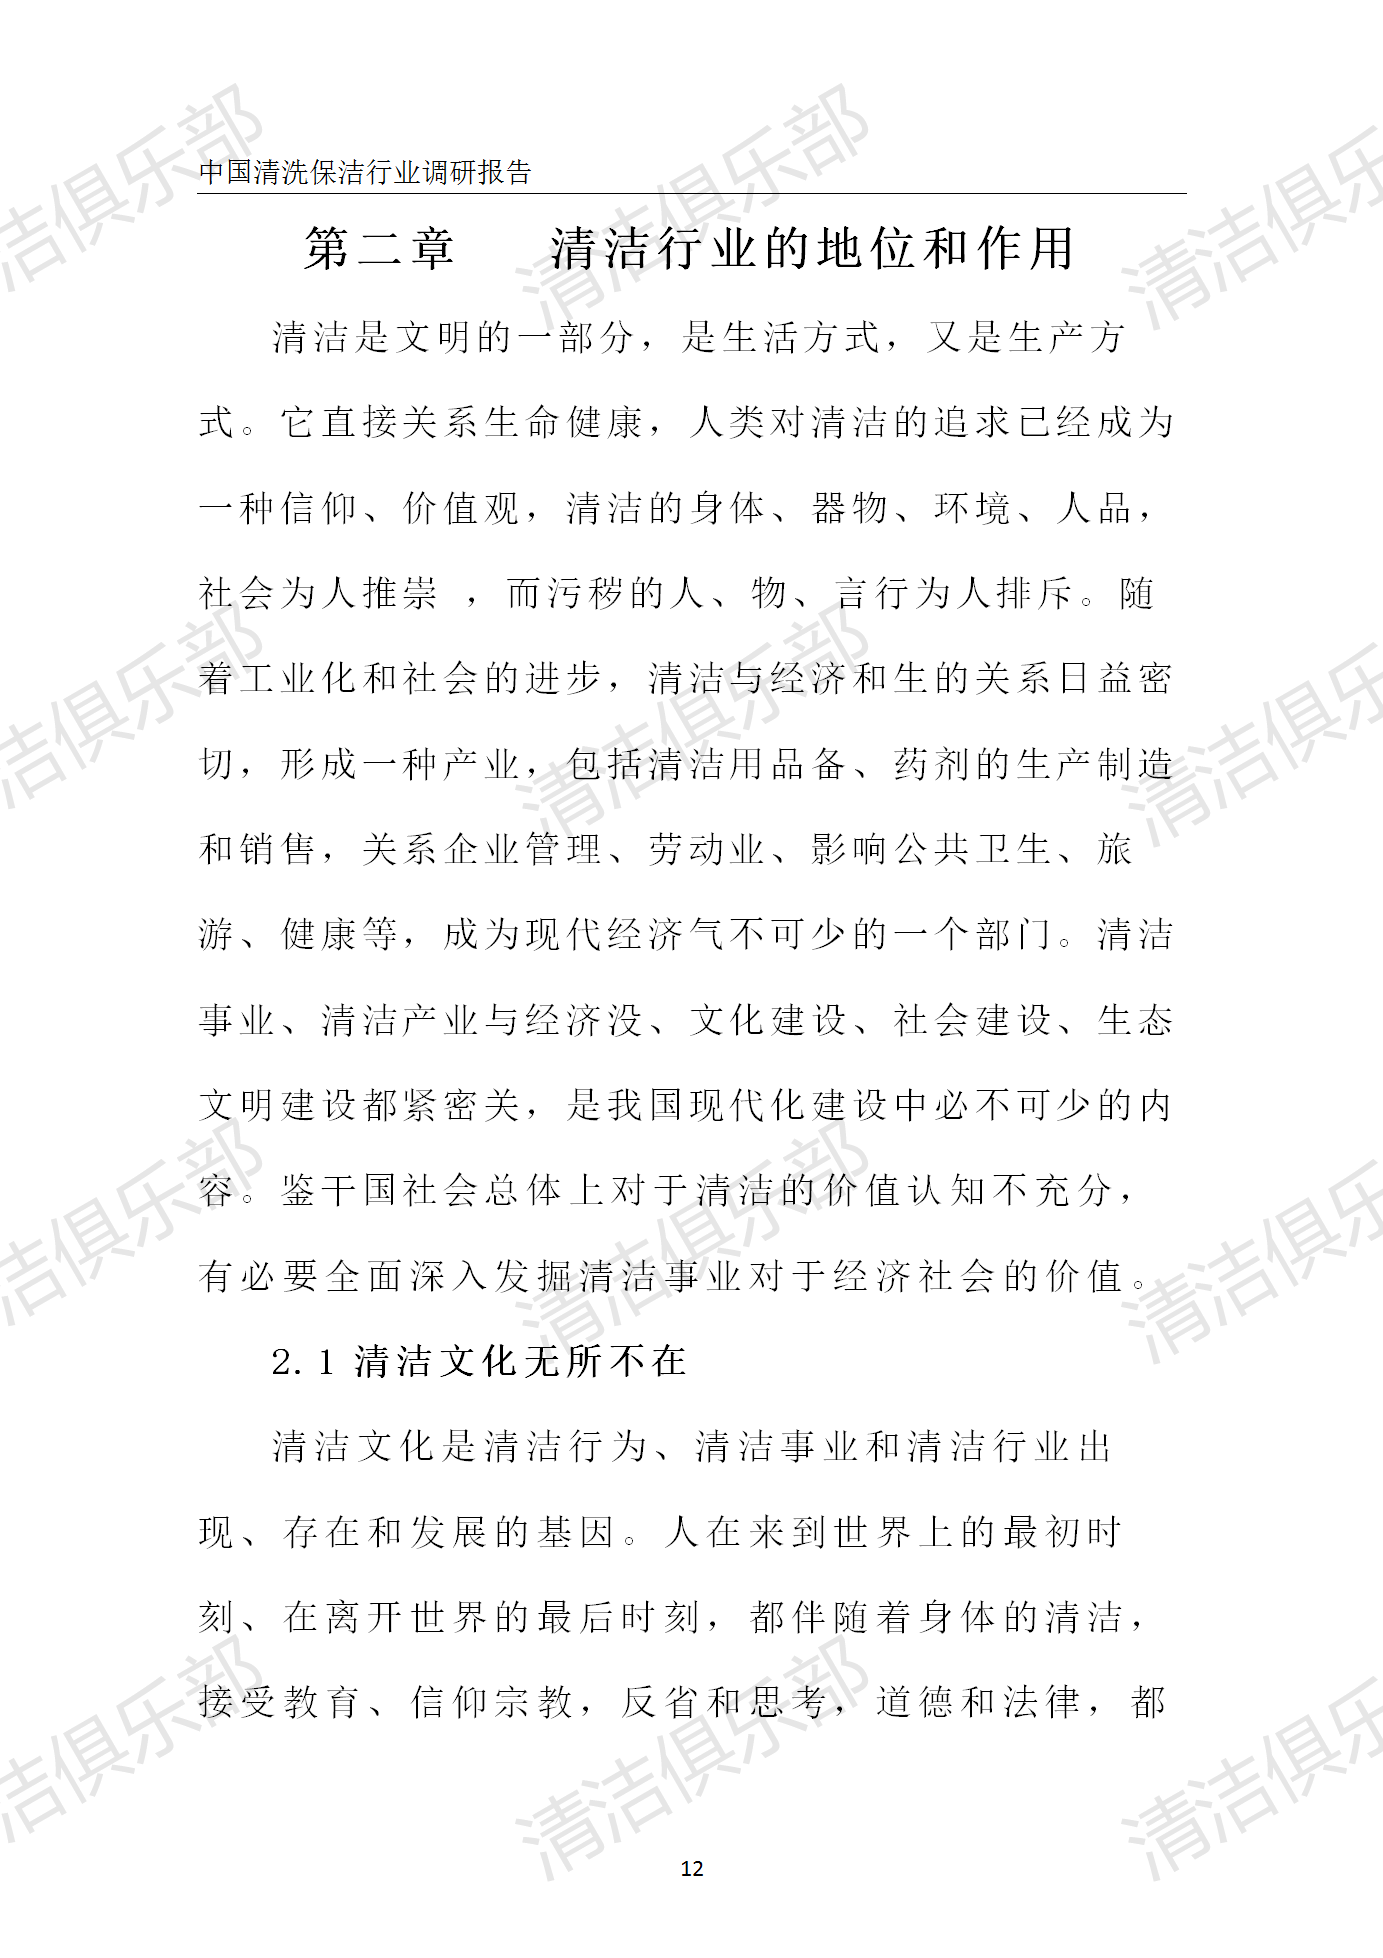 中国清洗保洁行业调研报告排版_22.png